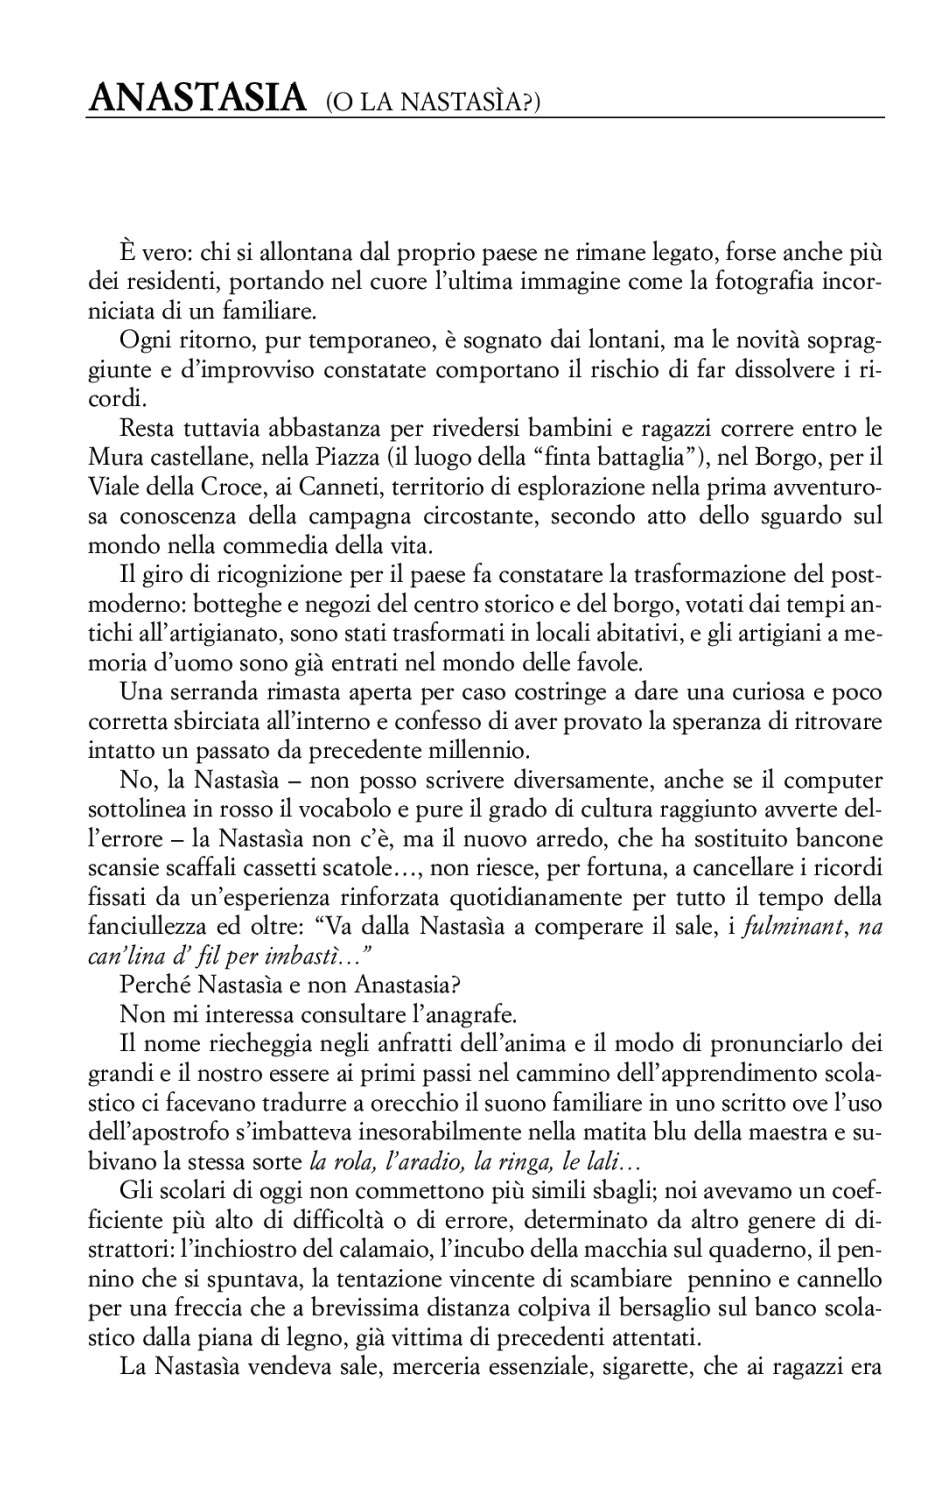 La torr i arduna tutti 2005 p.017